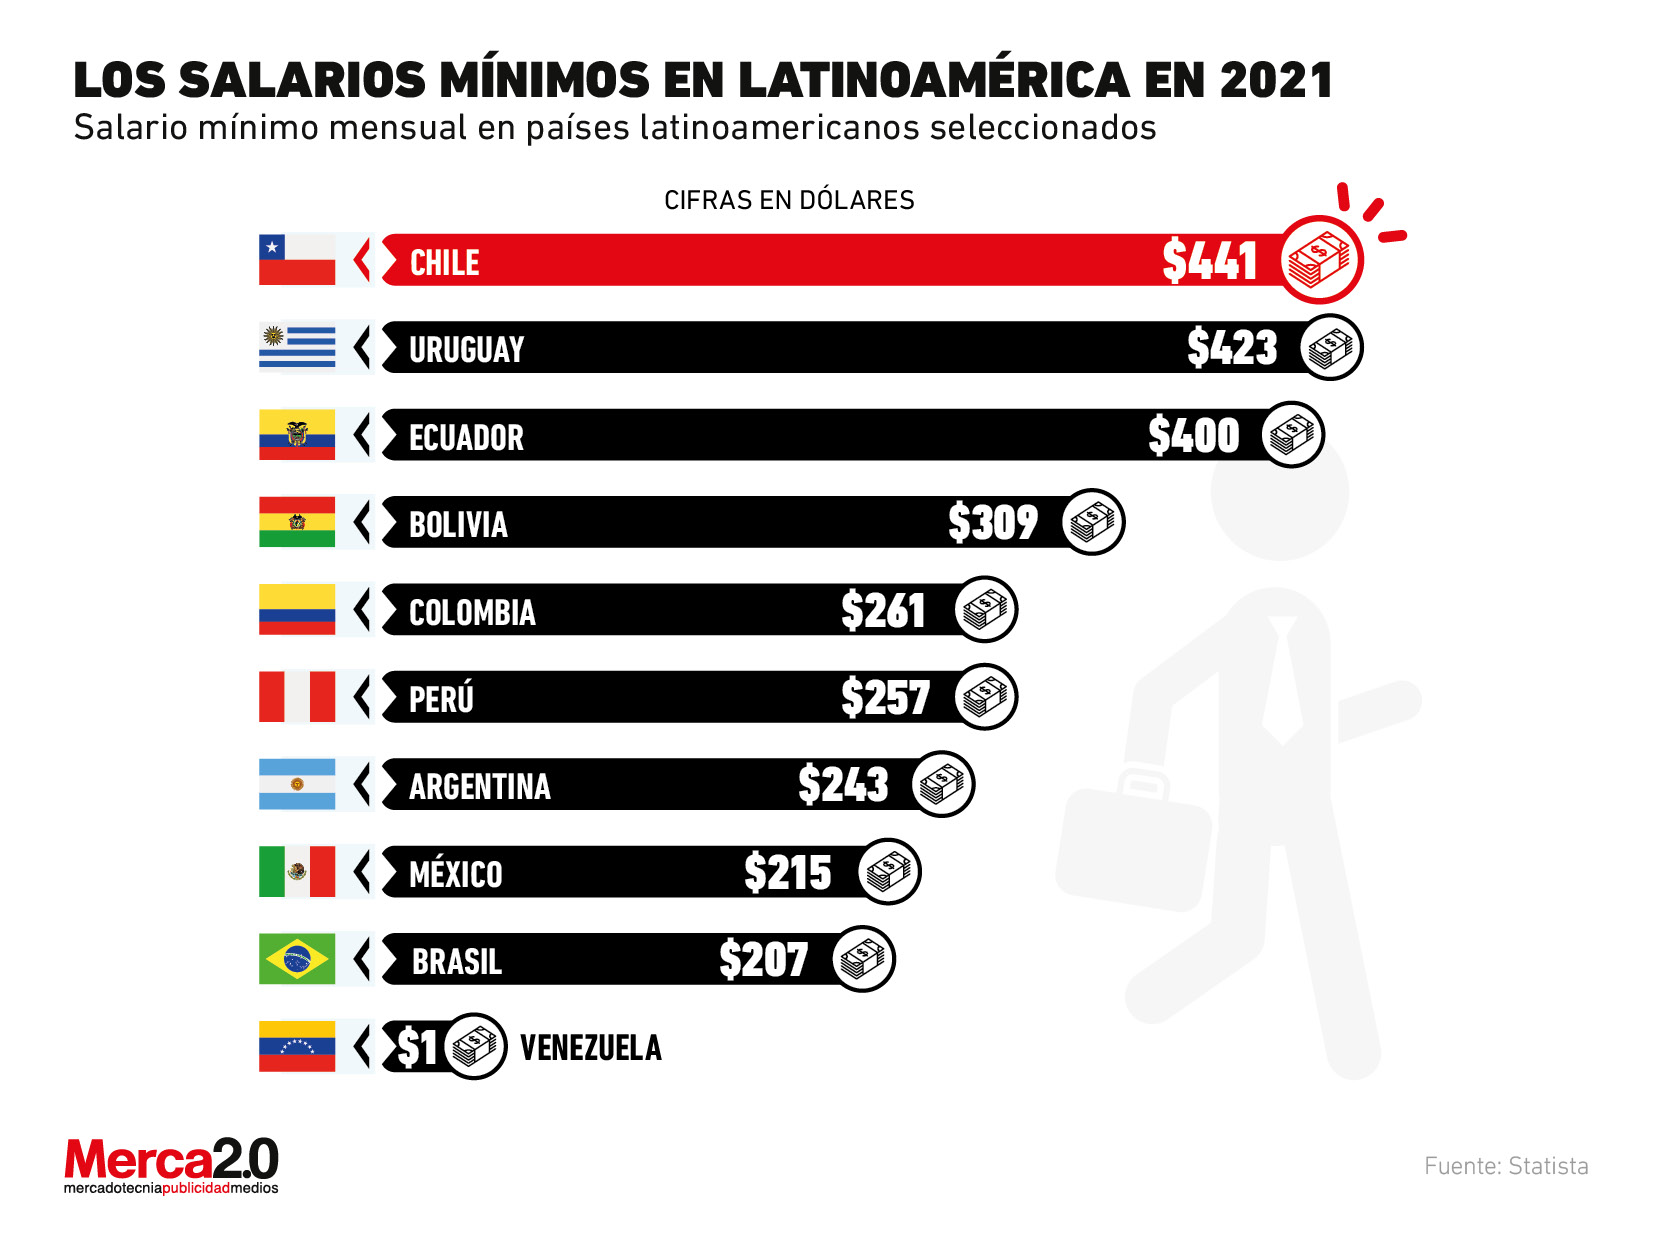 Así se encuentran los salarios mínimos en Latinoamérica en este 2021